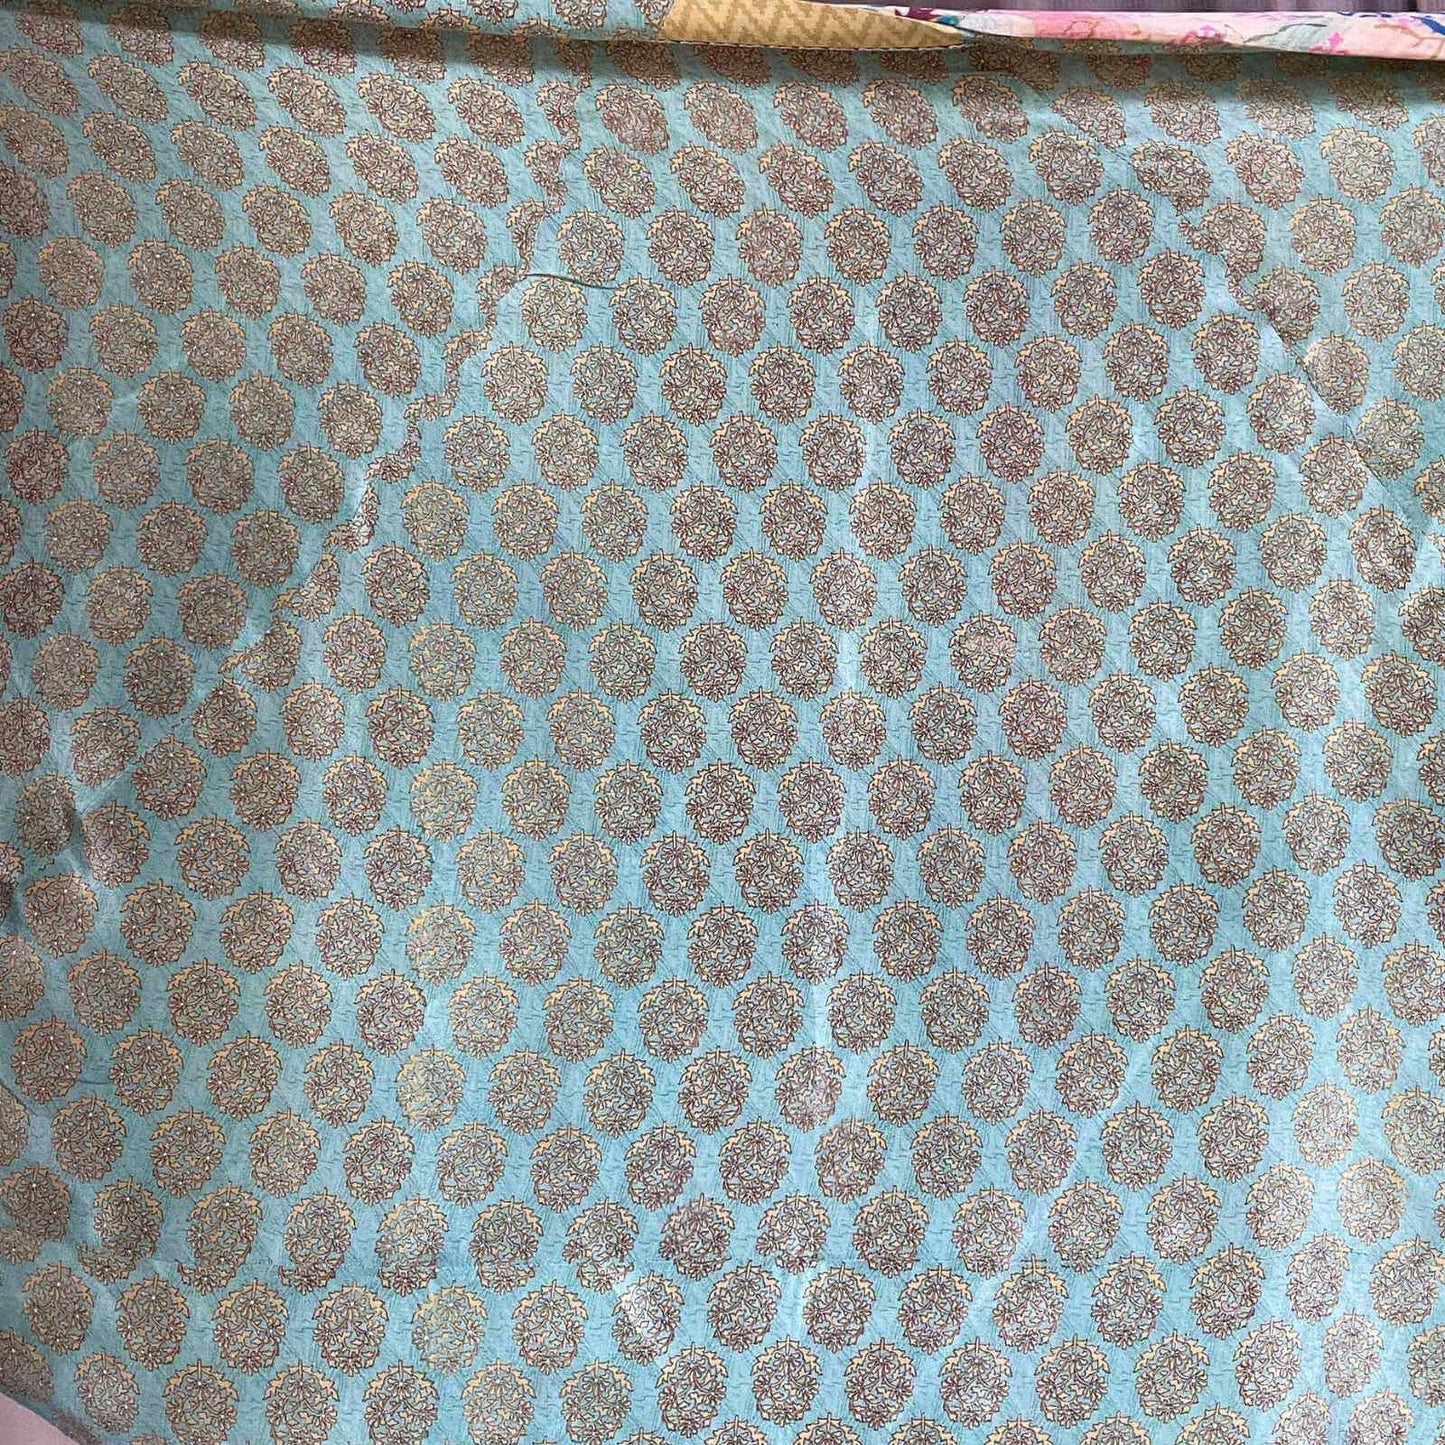 Lysegrønt mønster på stort silketørklæde fra Cofur